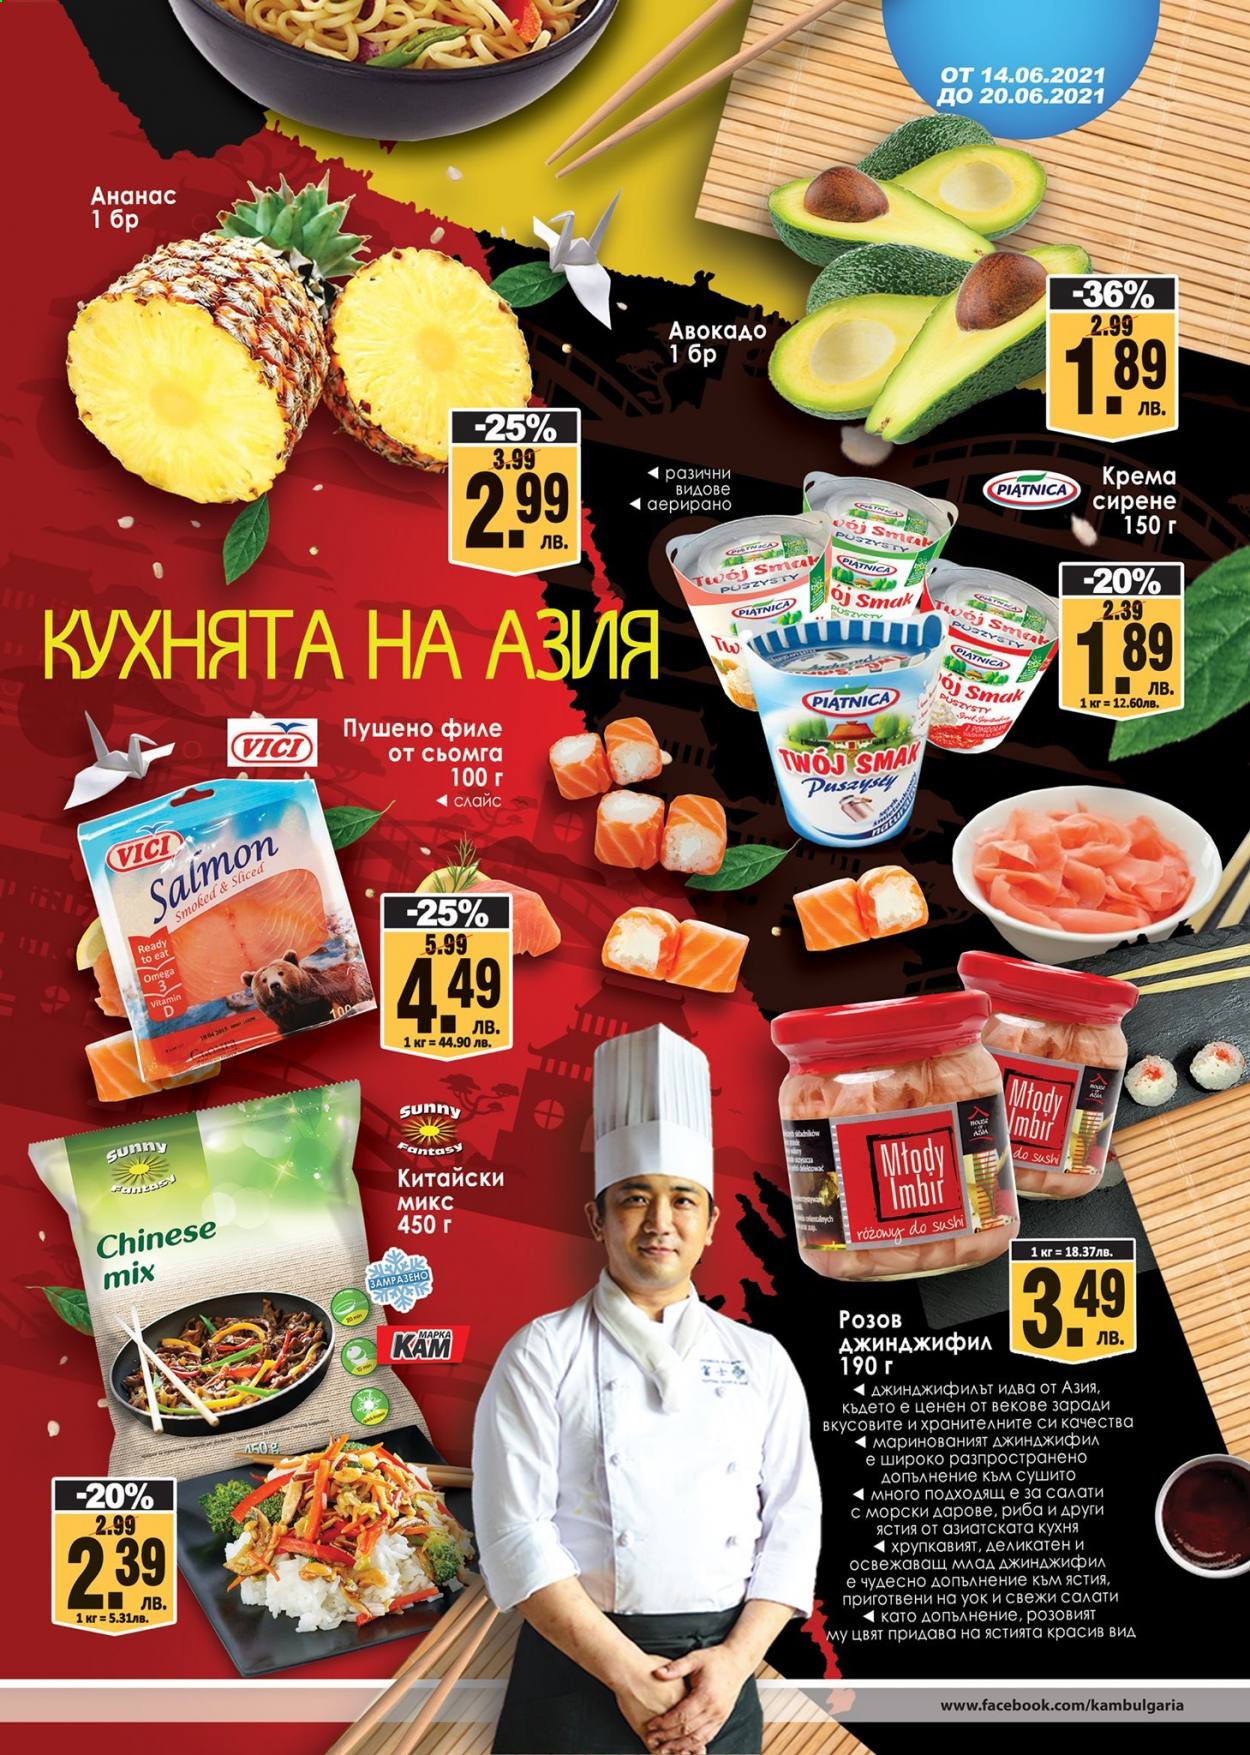 thumbnail - Брошура на КАМ Маркет - 14.06.2021 - 20.06.2021 - Продавани продукти - джинджифил, авокадо, ананас, филе от сьомга, крема сирене. Страница 3.